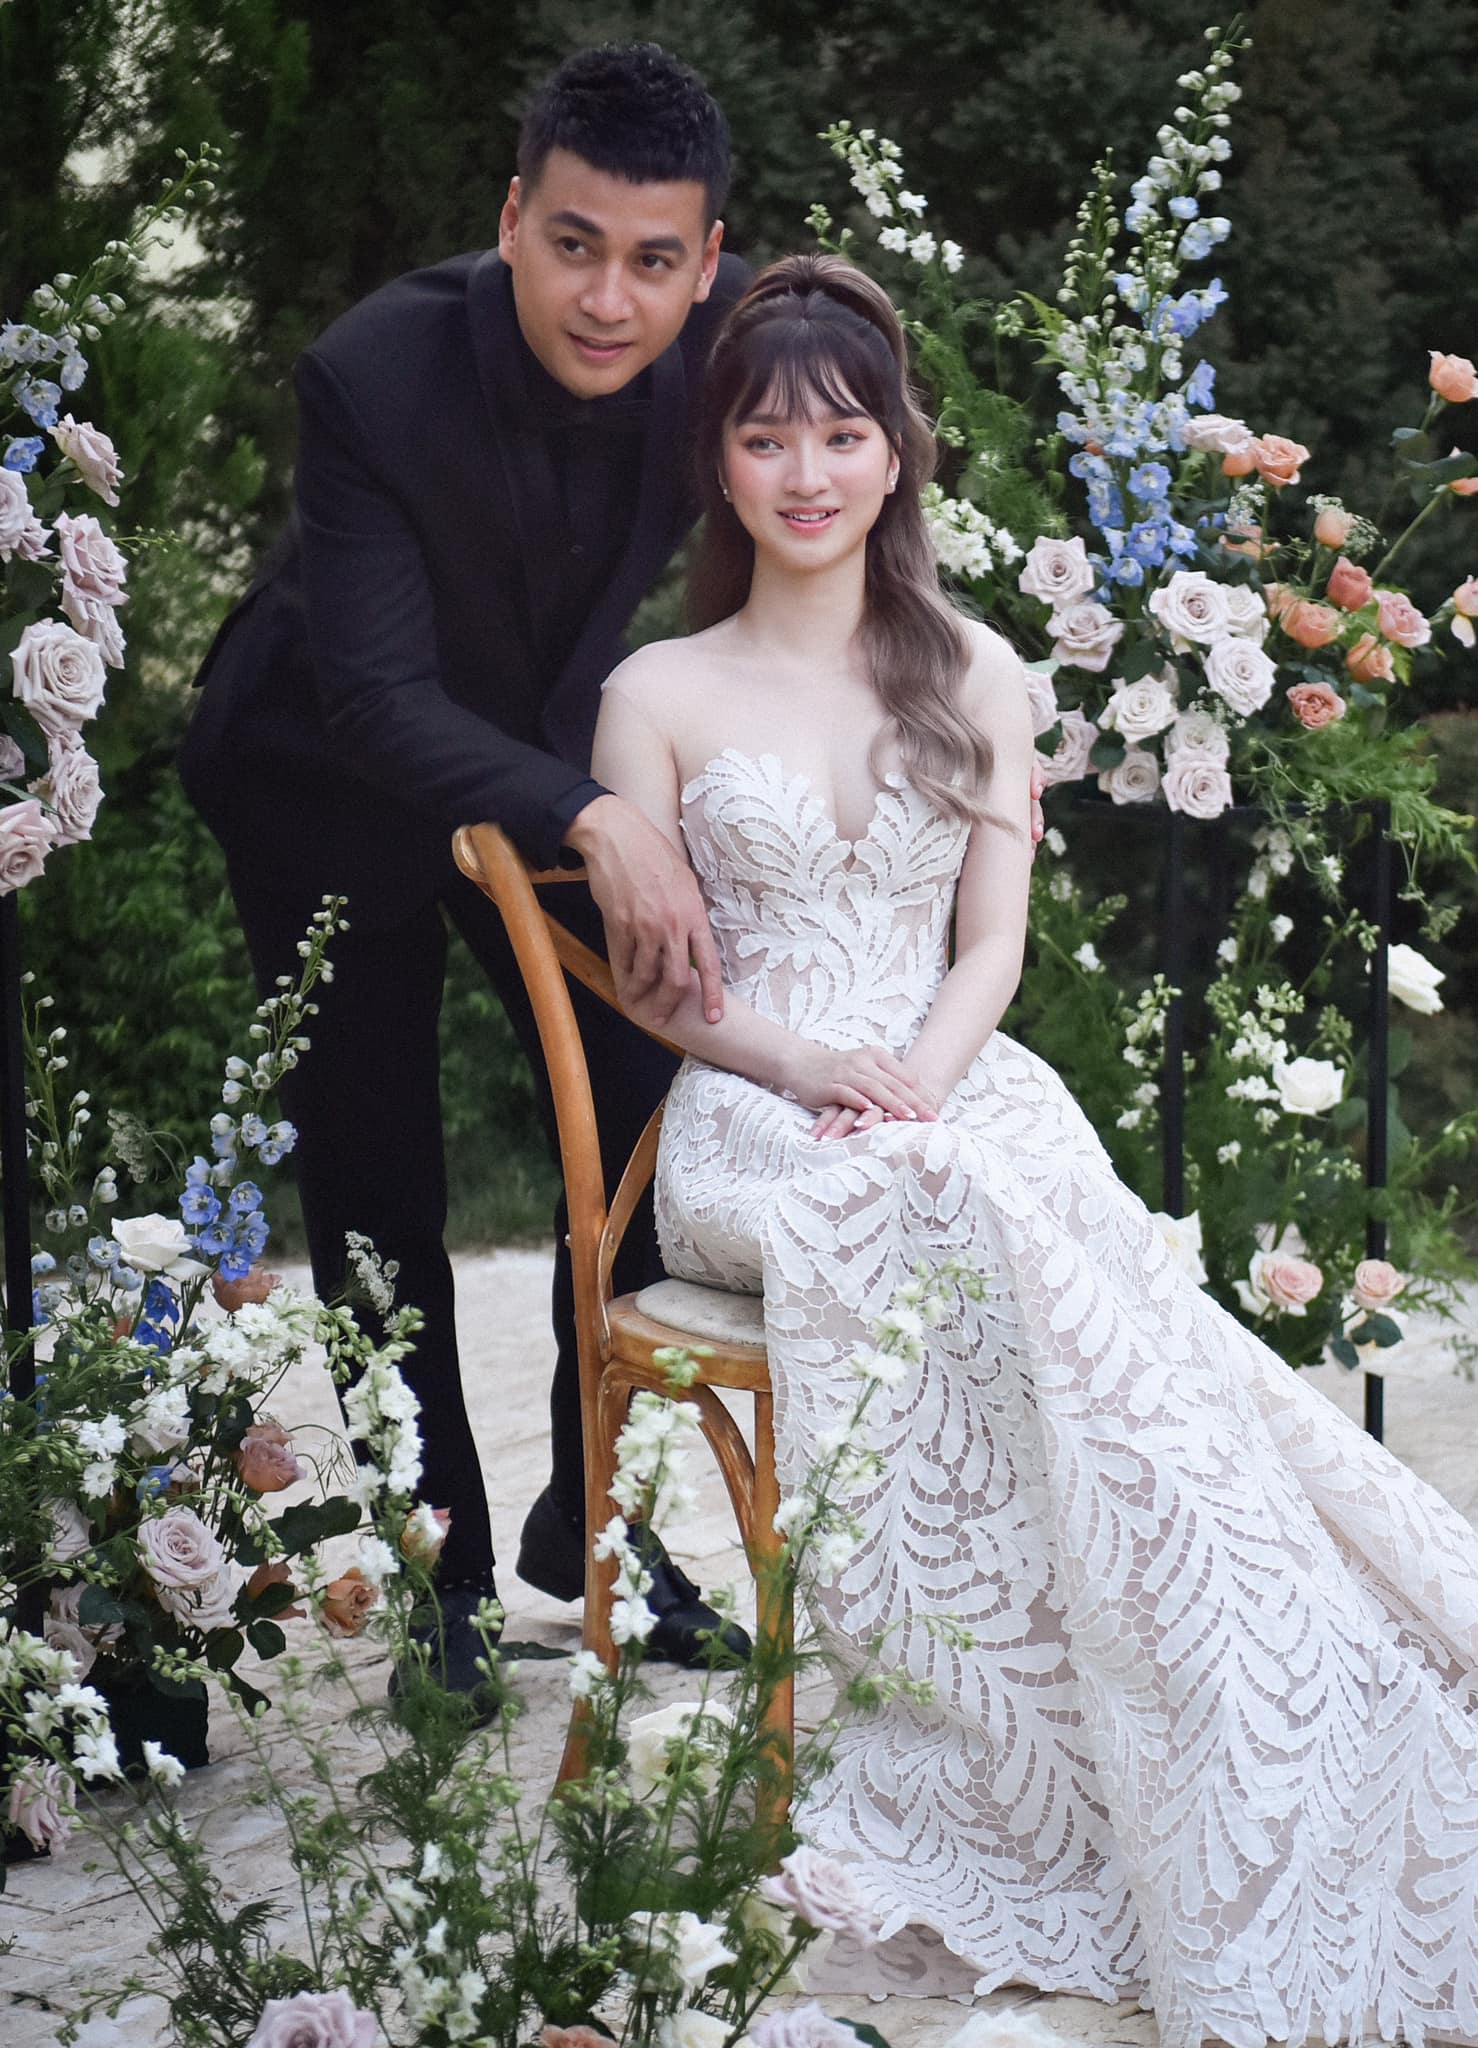 Bạn đã từng thấy ảnh cưới của trai nhảy Ngọc Thuận và diễn viên vợ chưa? Nếu chưa, hãy nhanh tay bấm vào đây để được chiêm ngưỡng sự kiện kết hôn đầy hoành tráng của hai người và những bức ảnh cưới đẹp tuyệt vời.